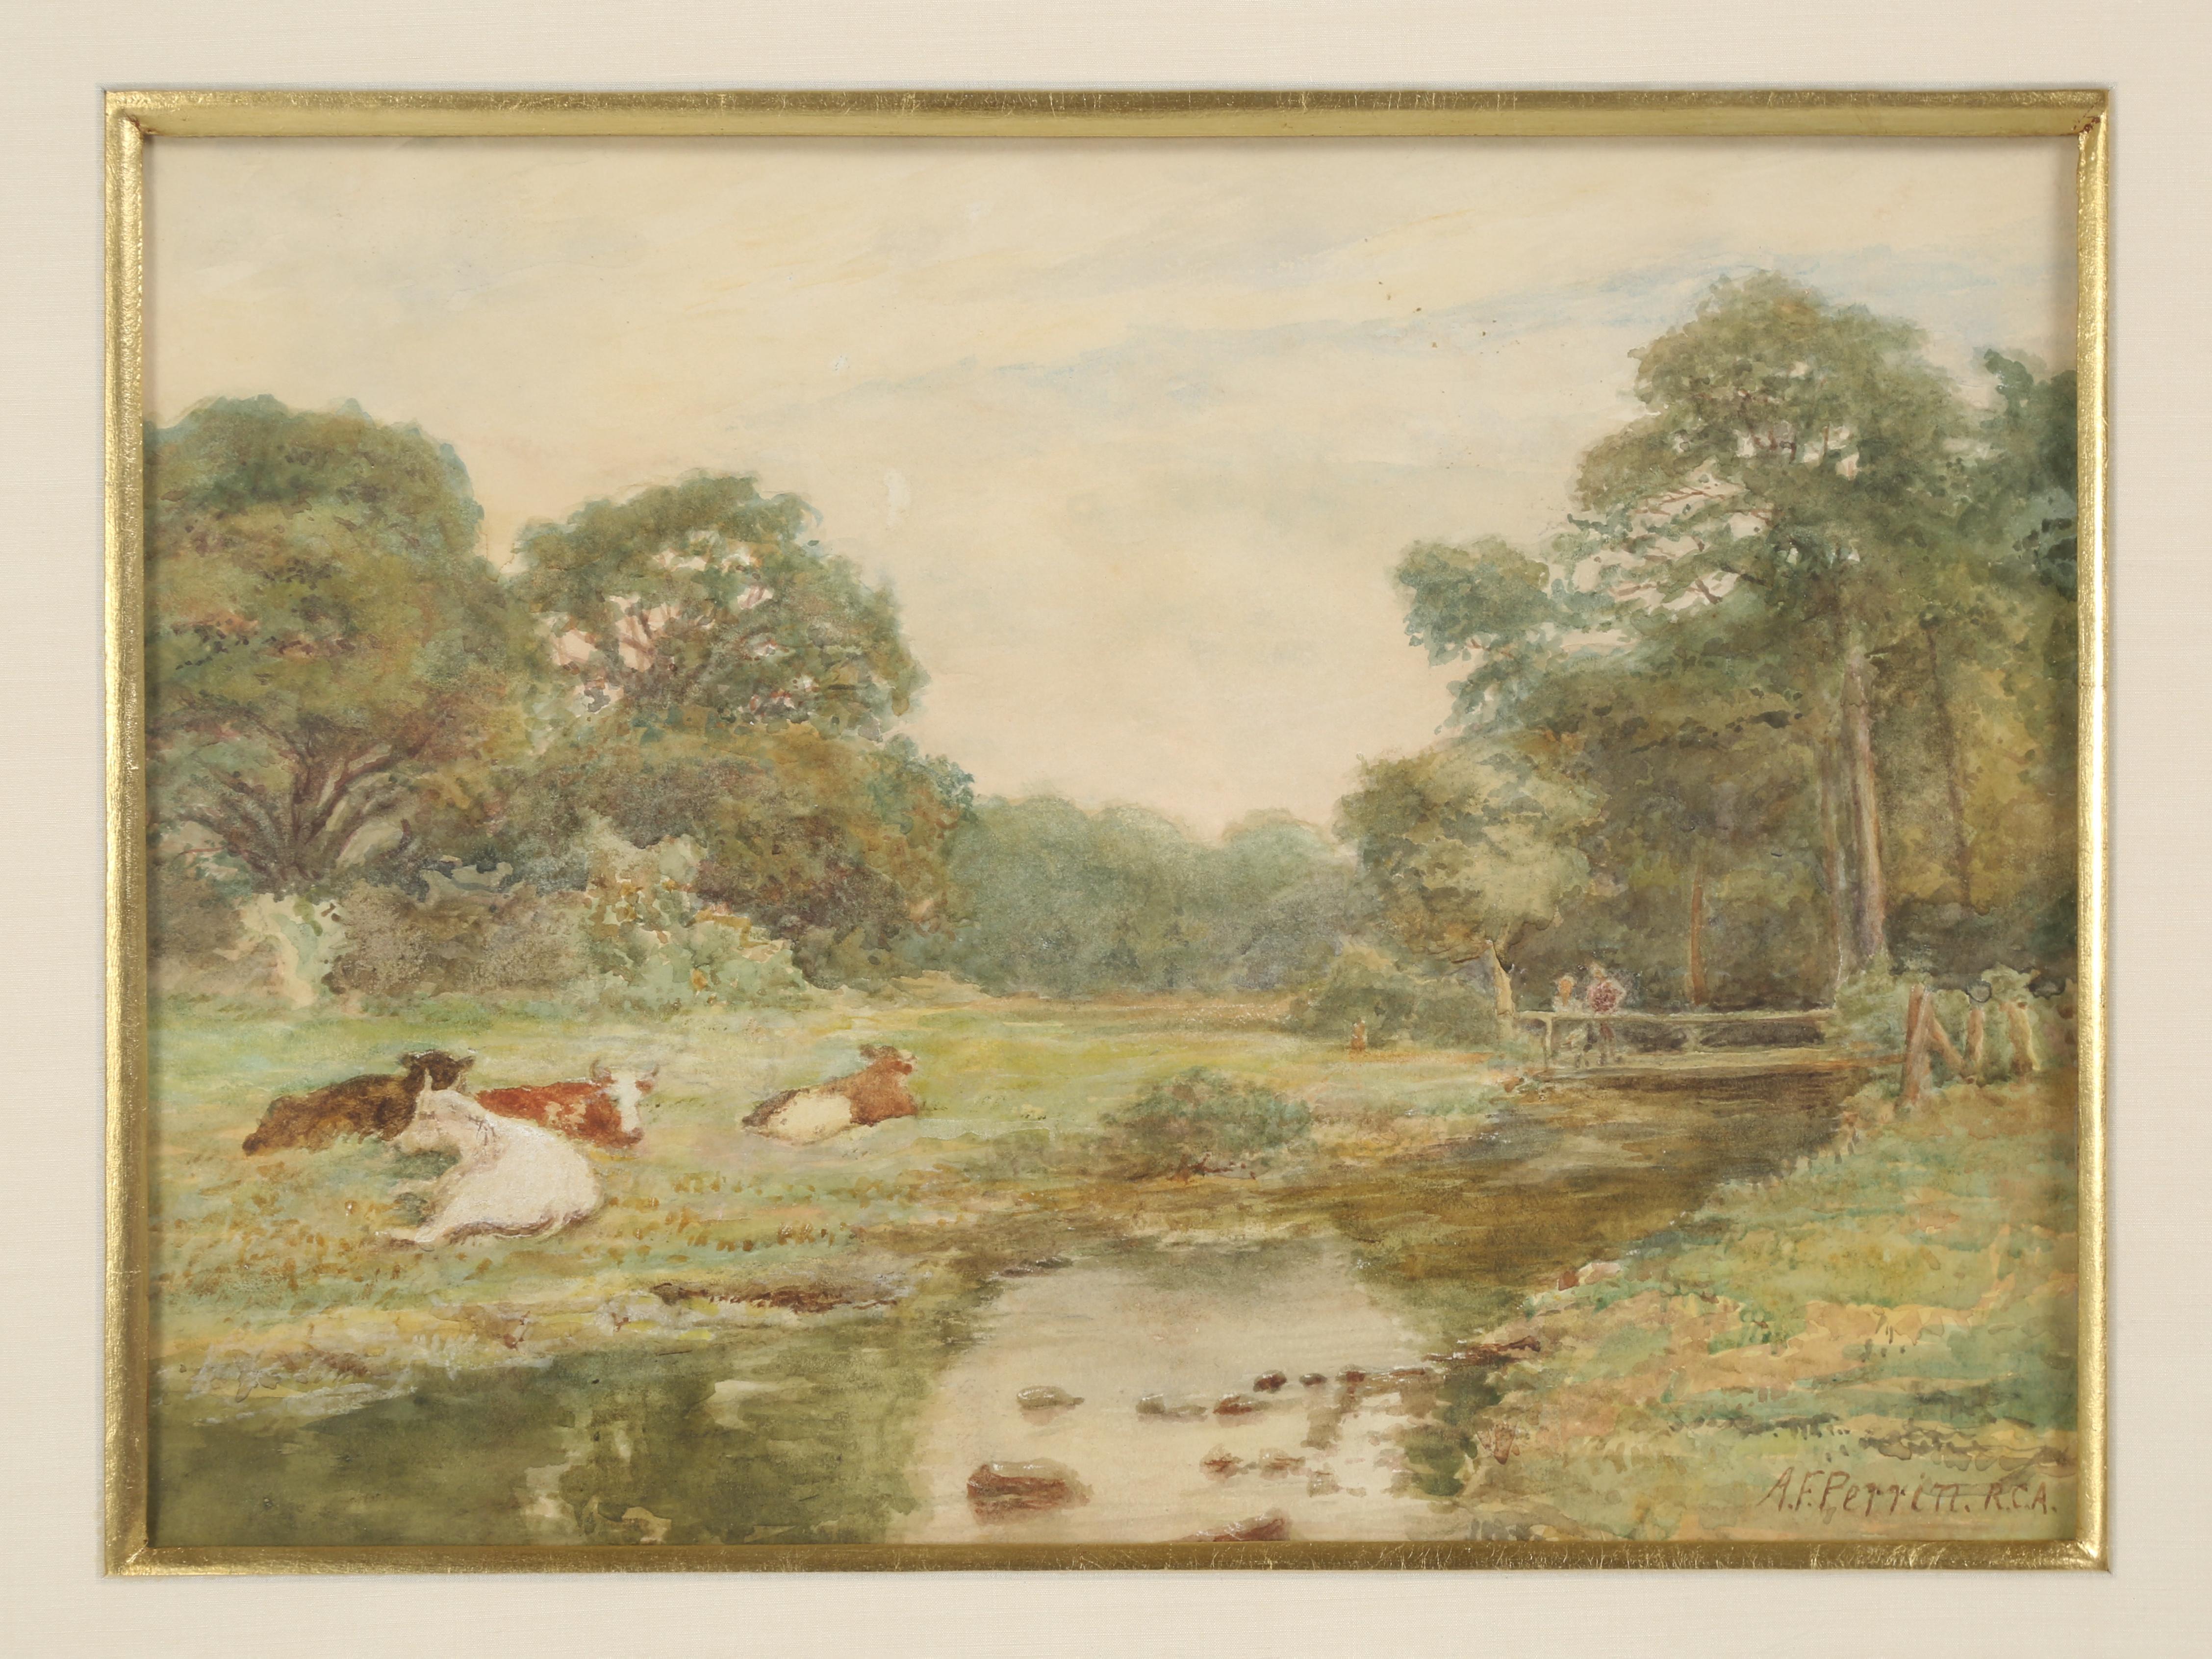 Alfred Feyen Perrin (1838 - 1918) est né à Birmingham, en Angleterre, et a peint dans tout le Royaume-Uni. Alfred Perrin est probablement plus connu pour ses peintures à l'aquarelle et cette peinture de paysage à l'aquarelle est tout à fait typique